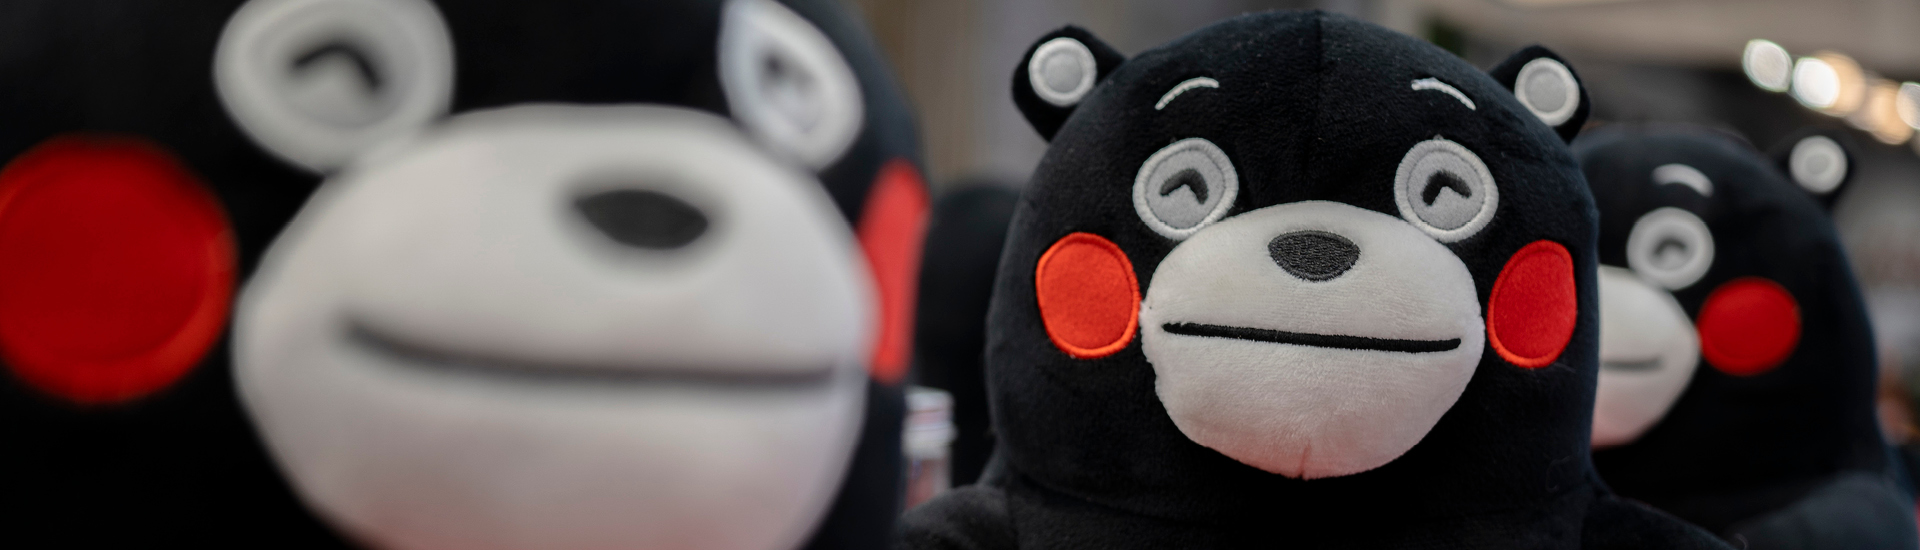 Ursos pretos de pelúcia, com a bochecha vermelha, um dos mascotes do Japão